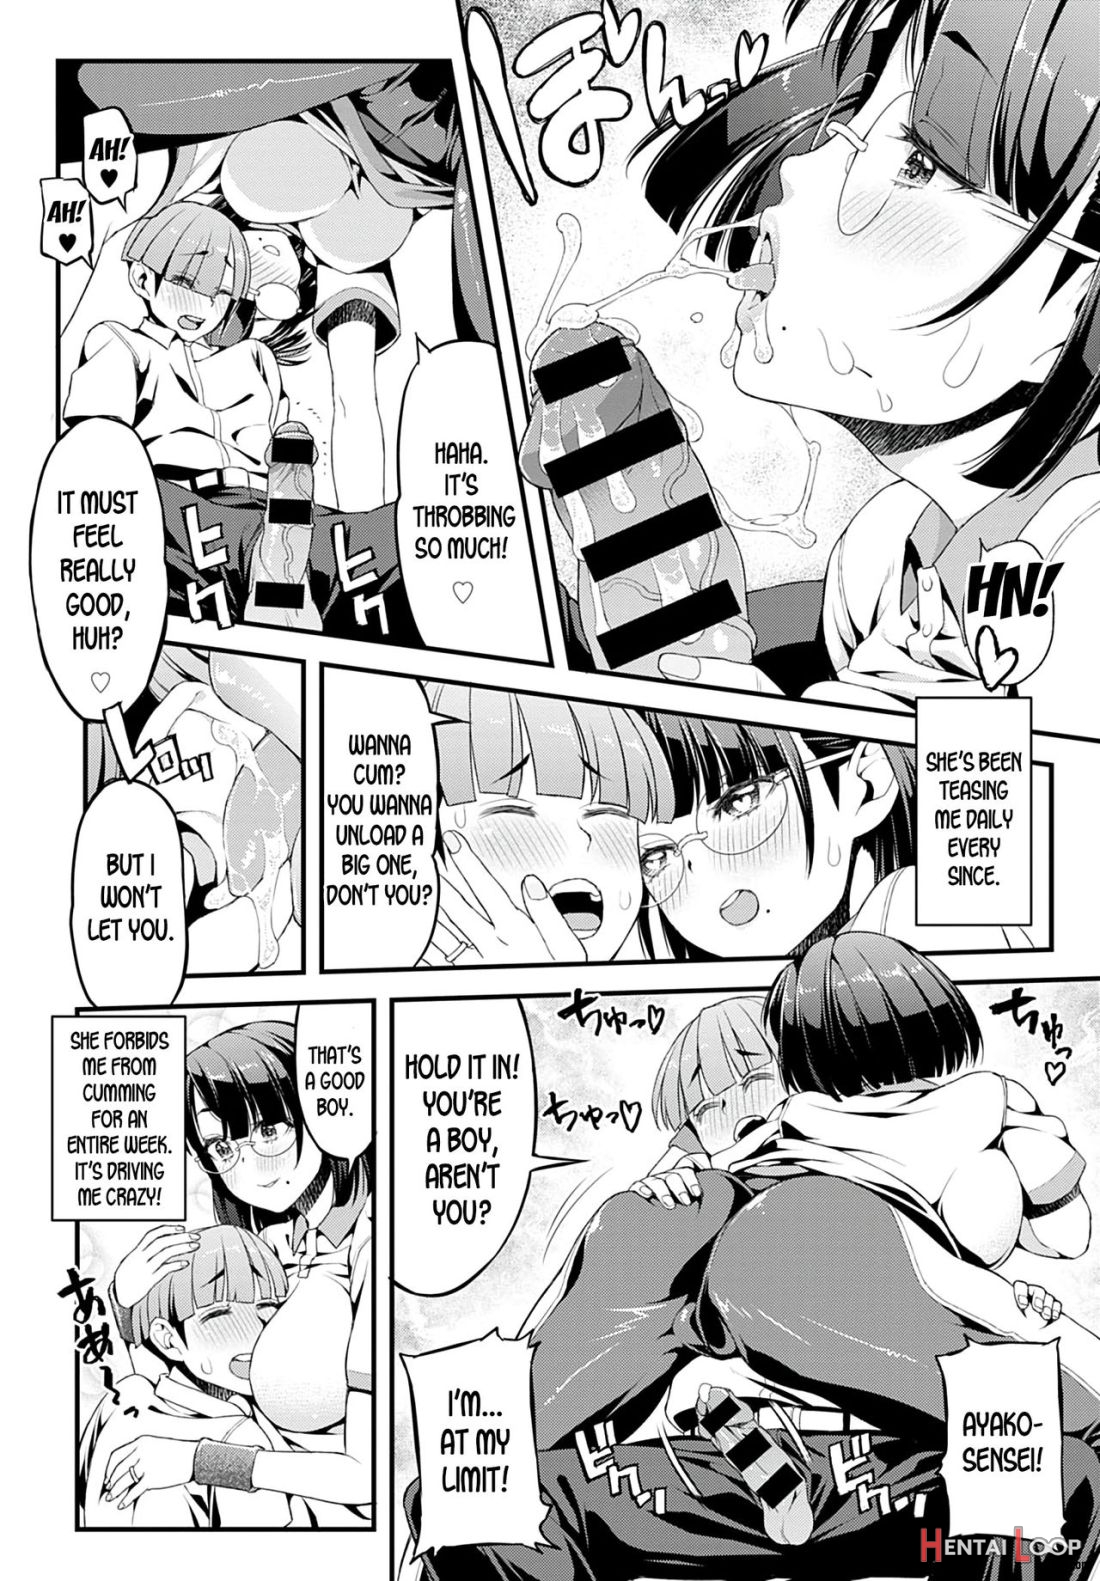 Boku To Ayako-sensei page 6